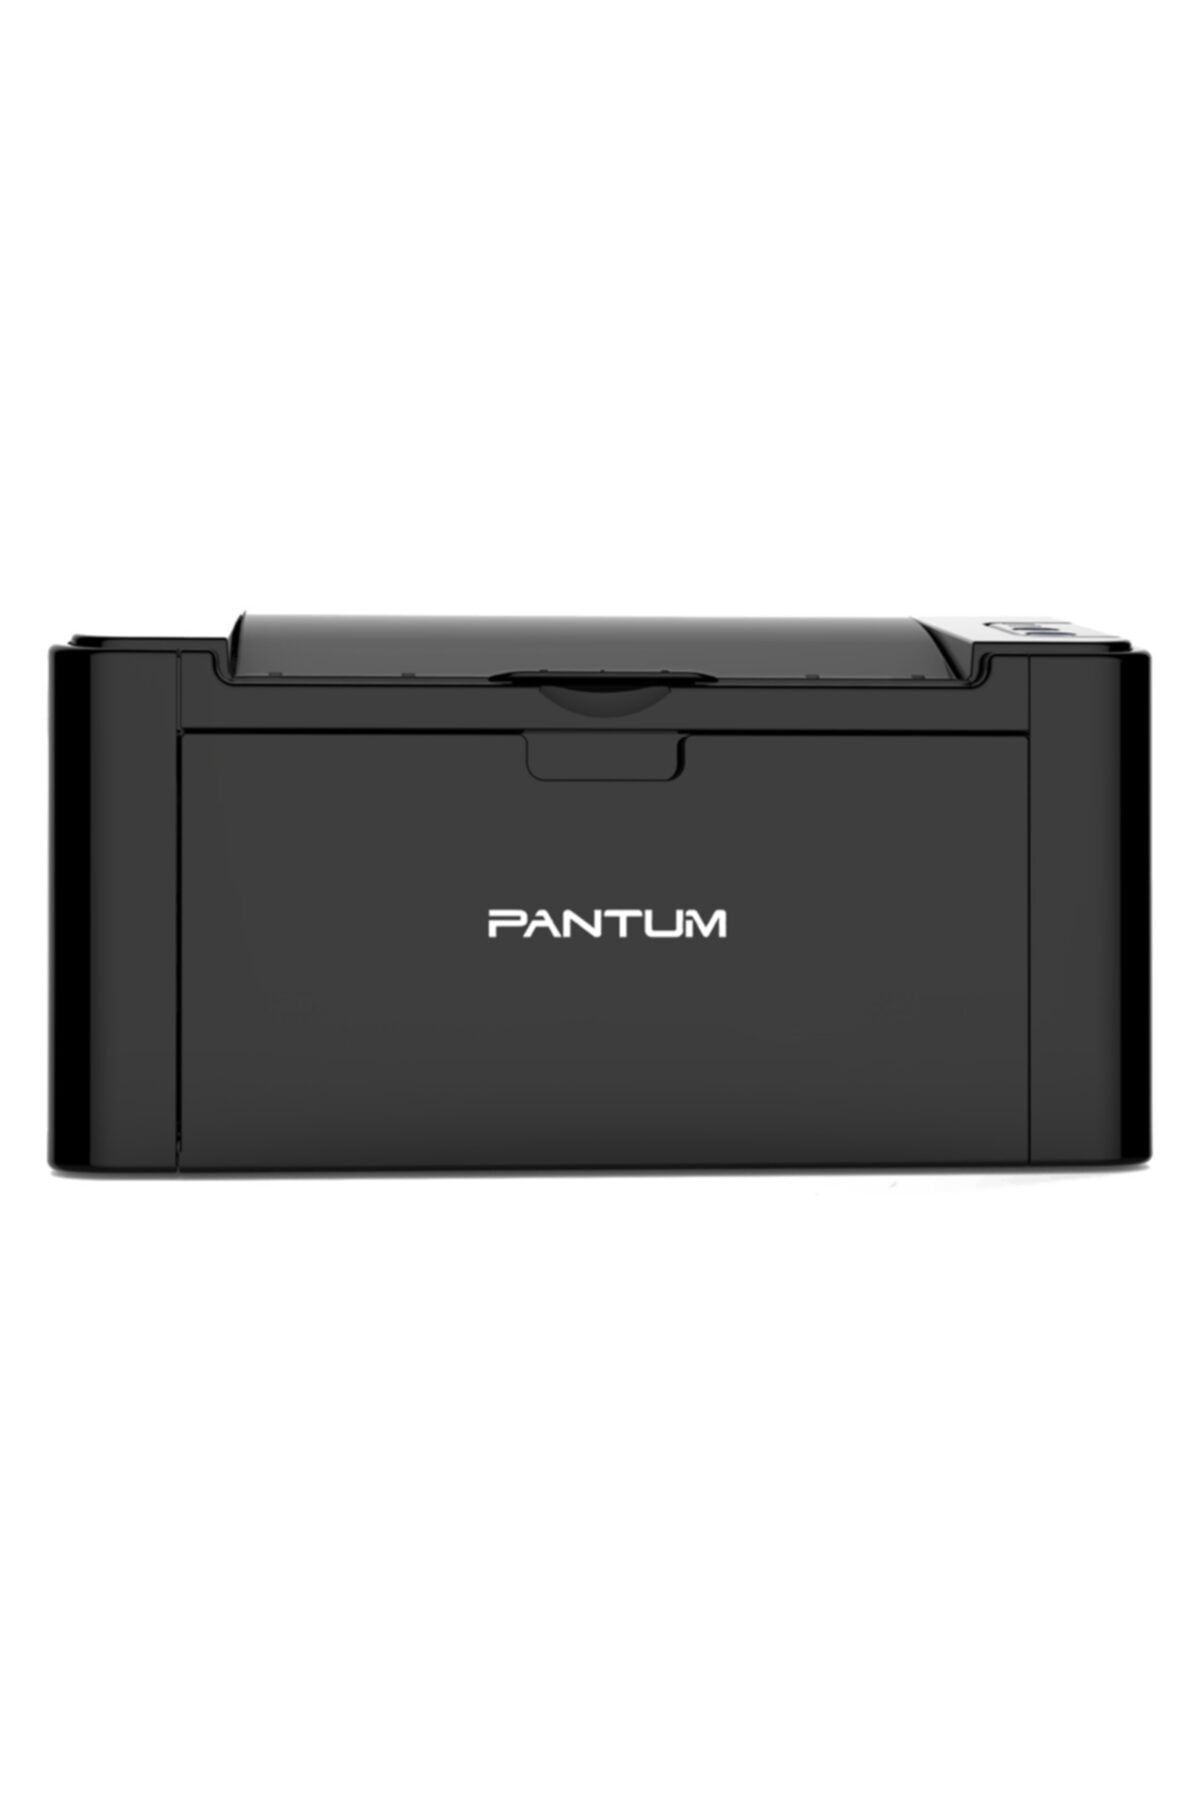 Pantum P2500w Wi-fi Mono Lazer Yazıcı